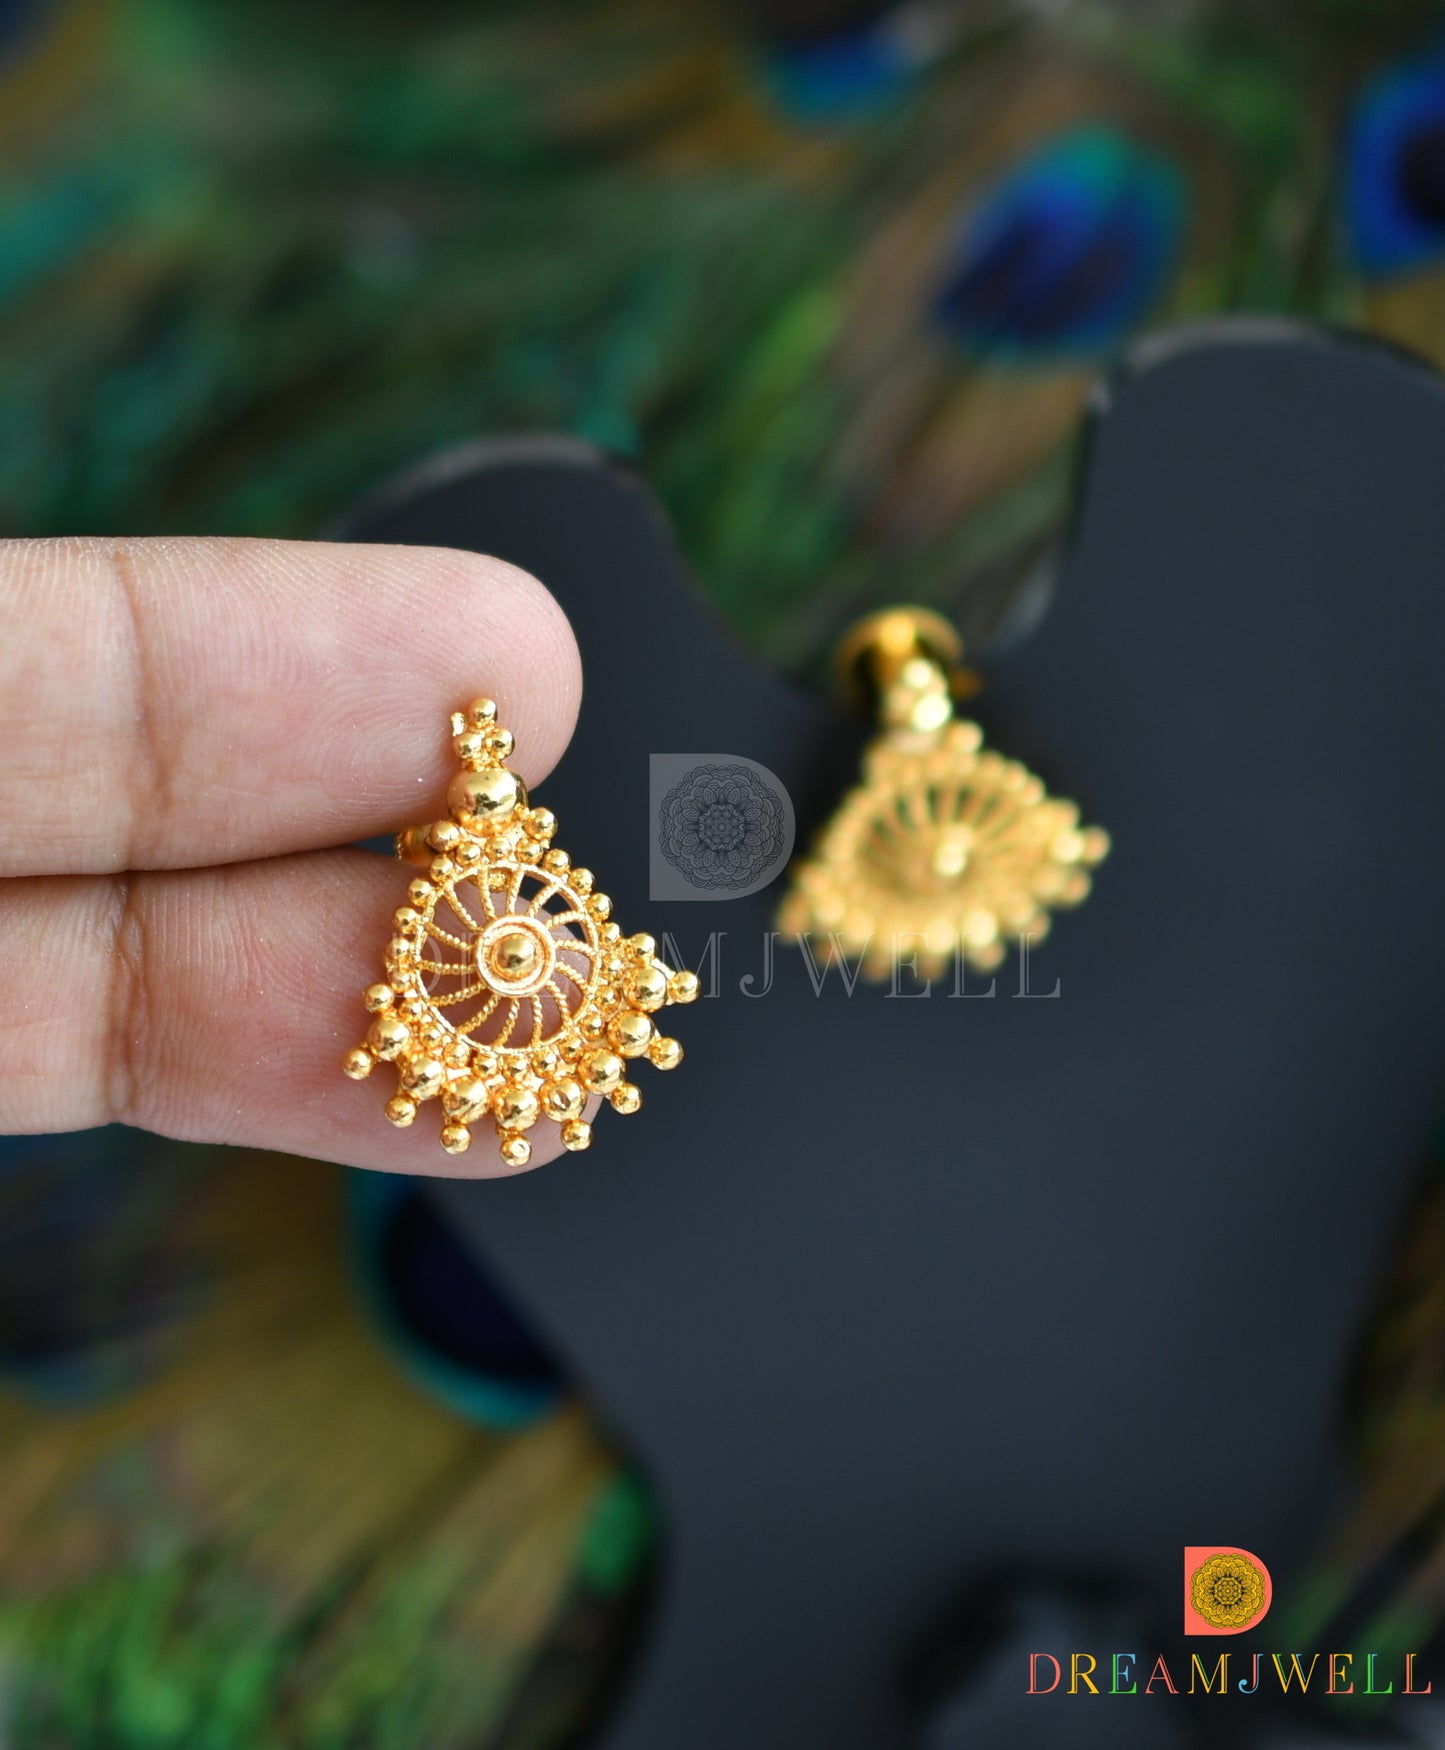 Gold tone Kerala style Earrings dj-37883